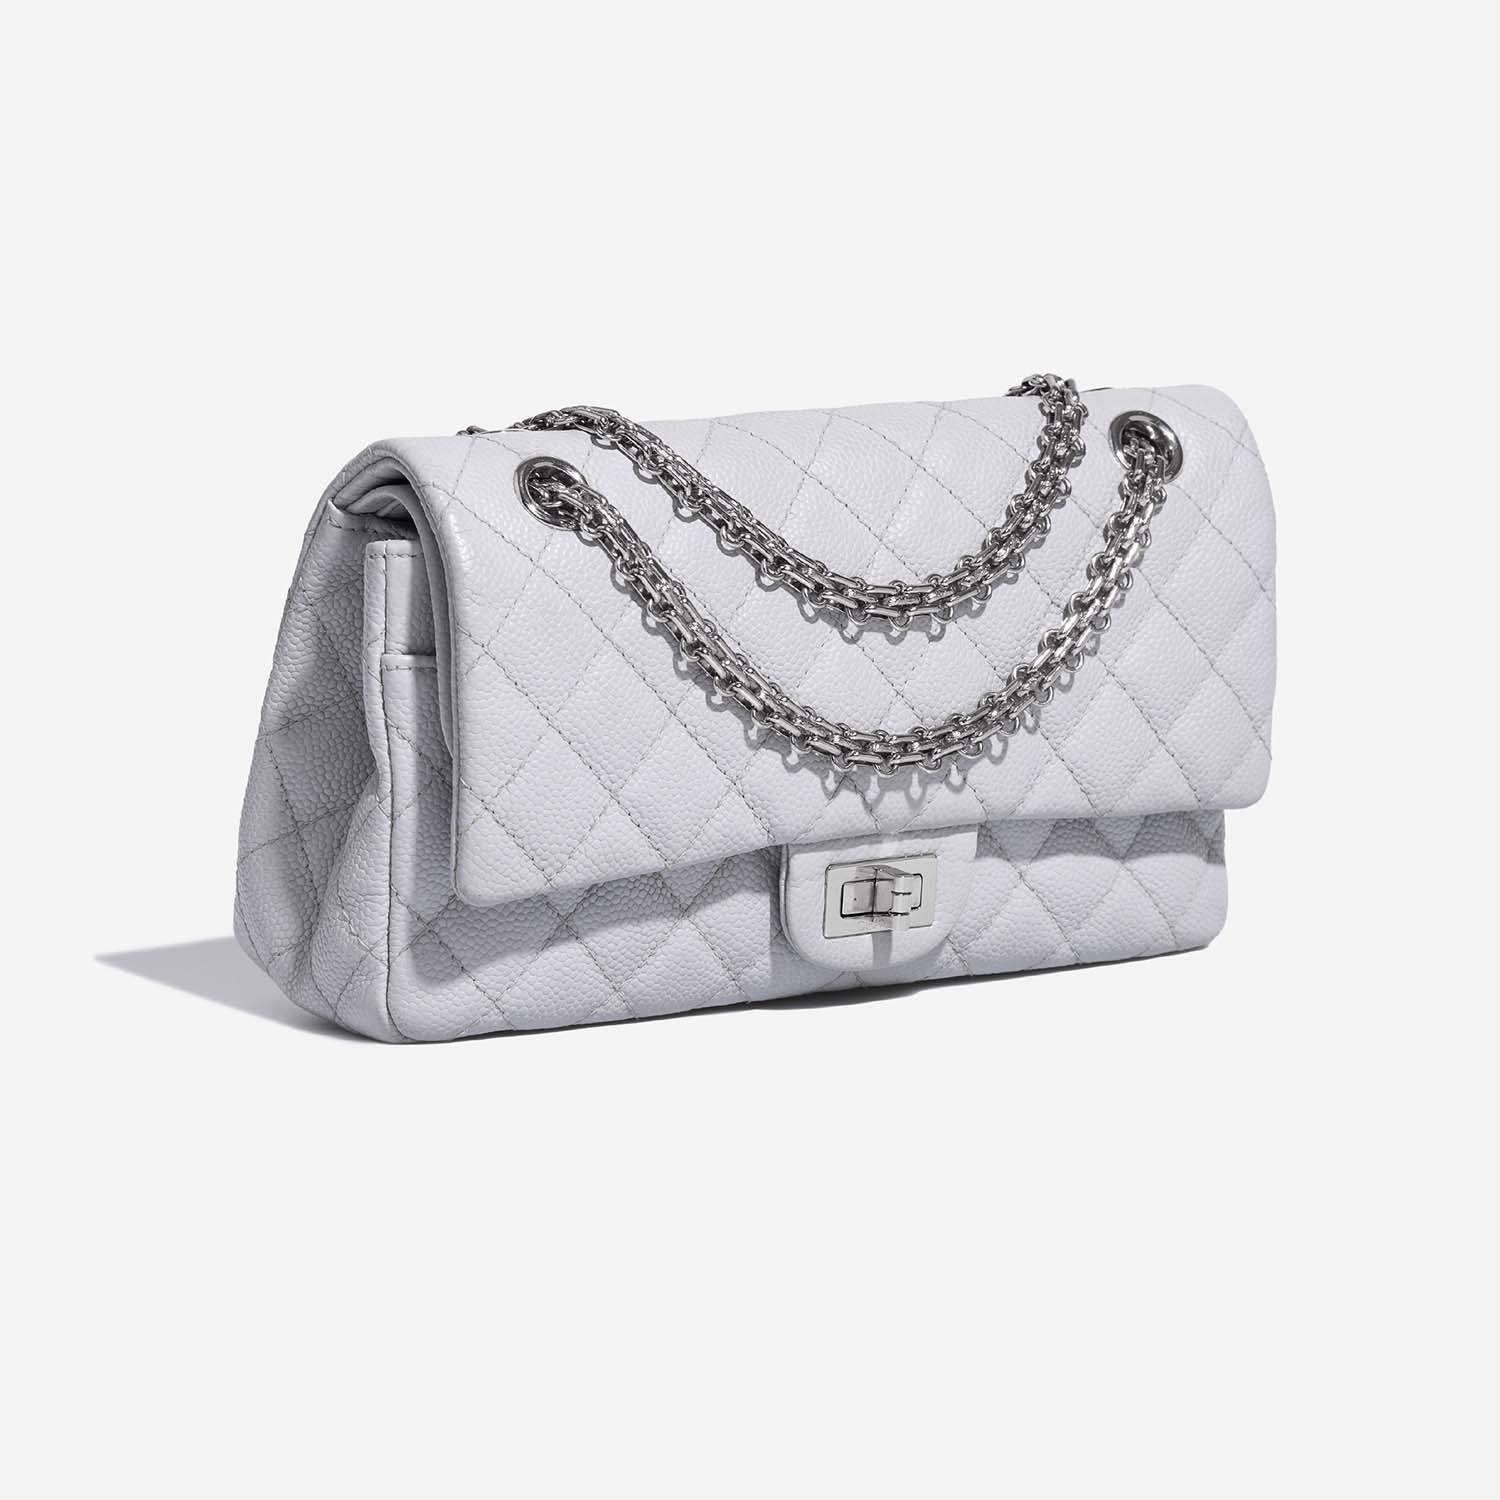 Chanel 255Reissue 225 LightBlue Side Front | Verkaufen Sie Ihre Designer-Tasche auf Saclab.com